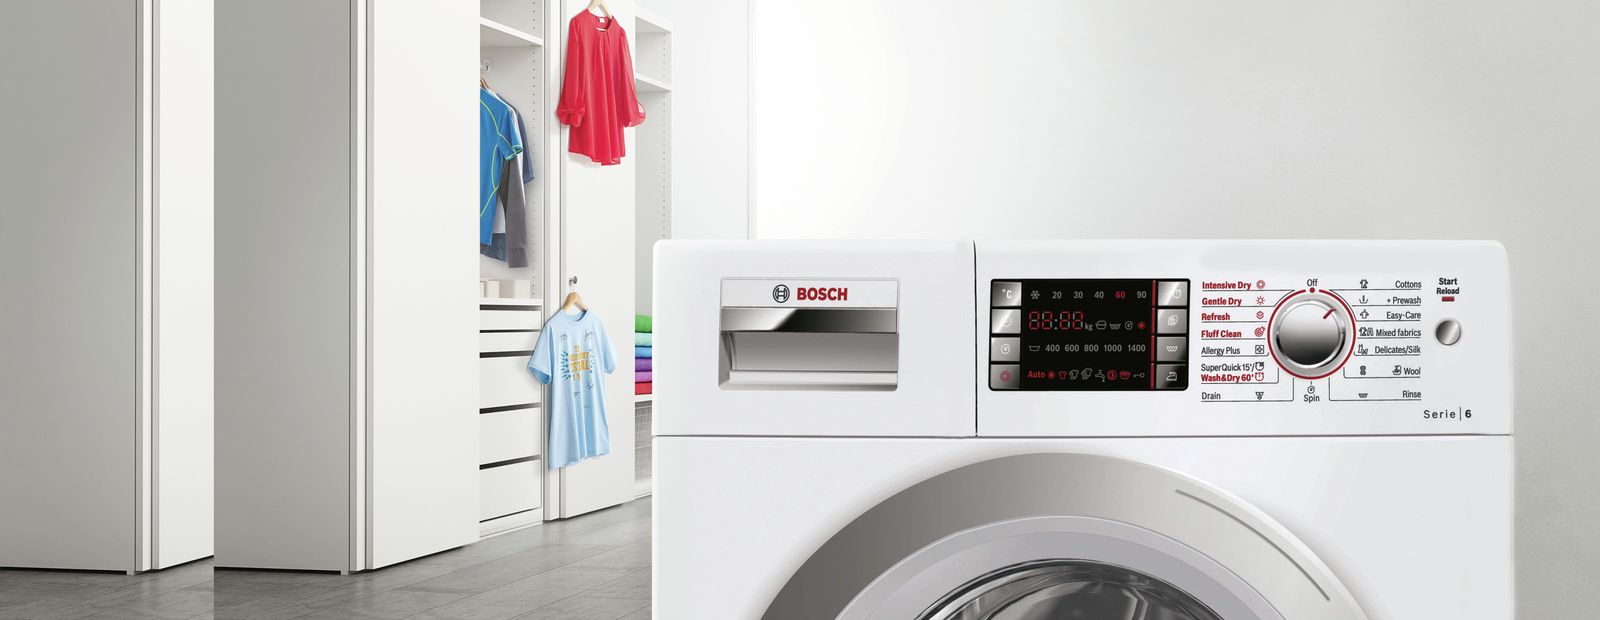 Làm quen máy giặt Bosch của bạn khi mới mua